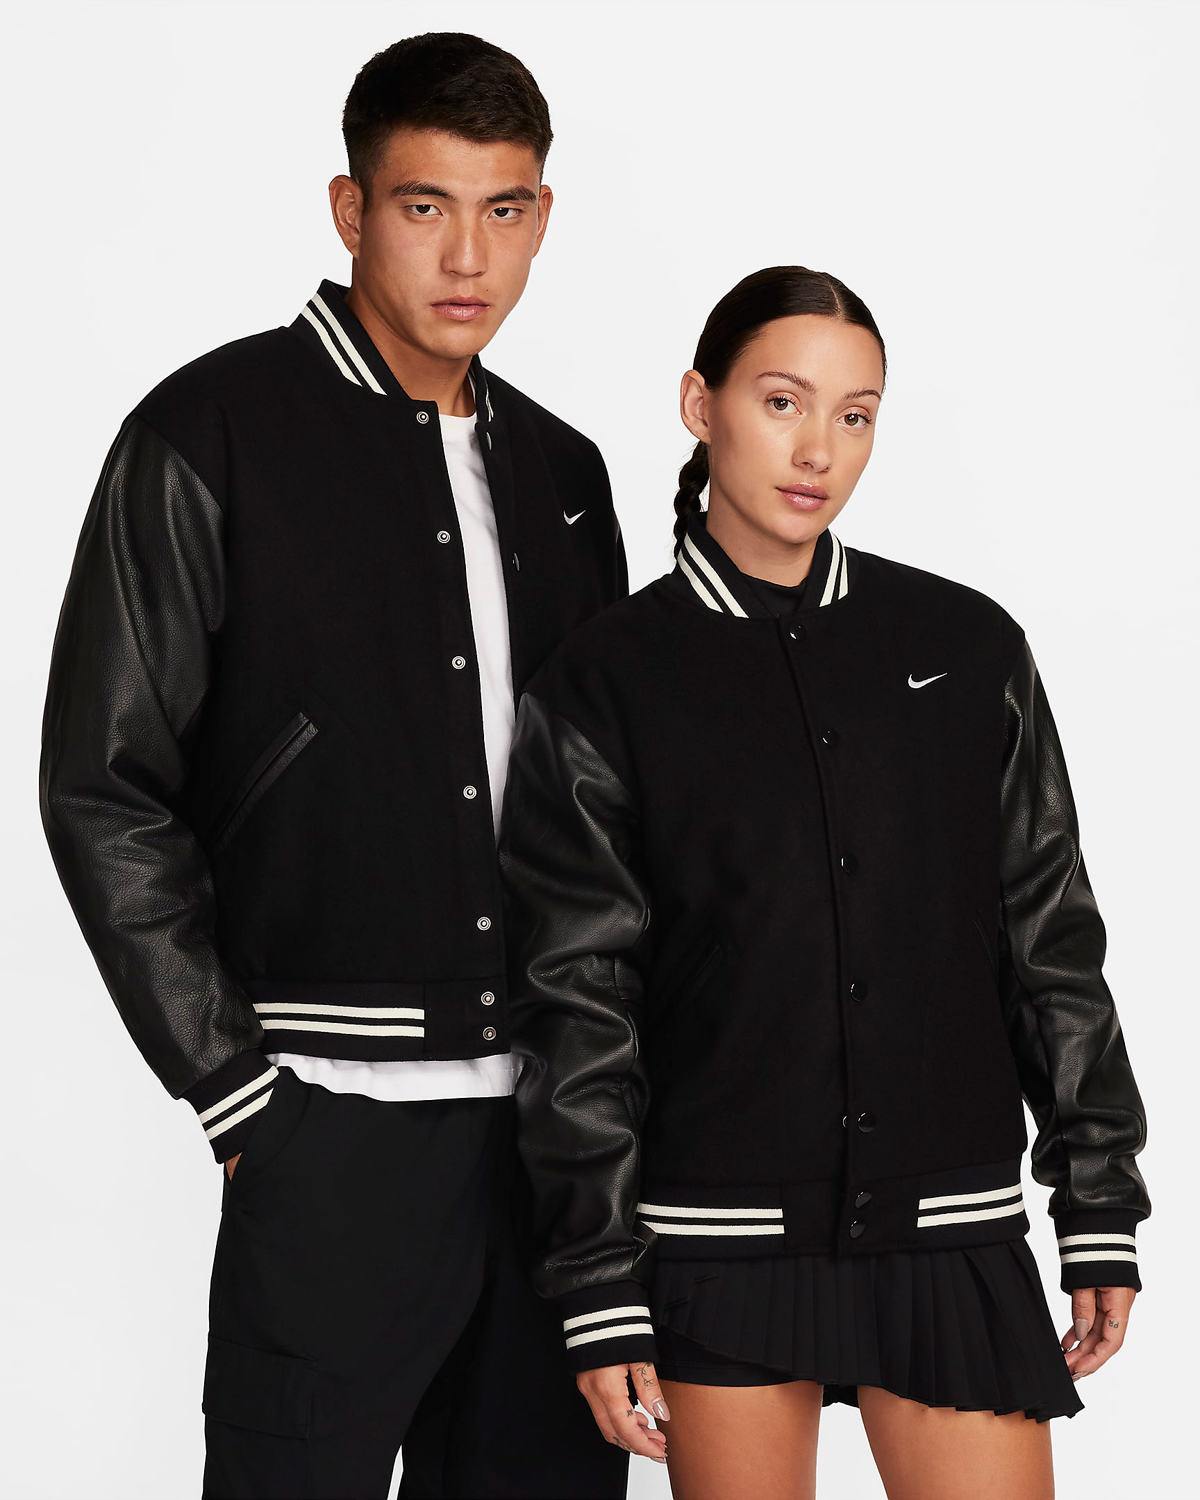 Nike-Authentics-Varsity-Jacket-Black-White